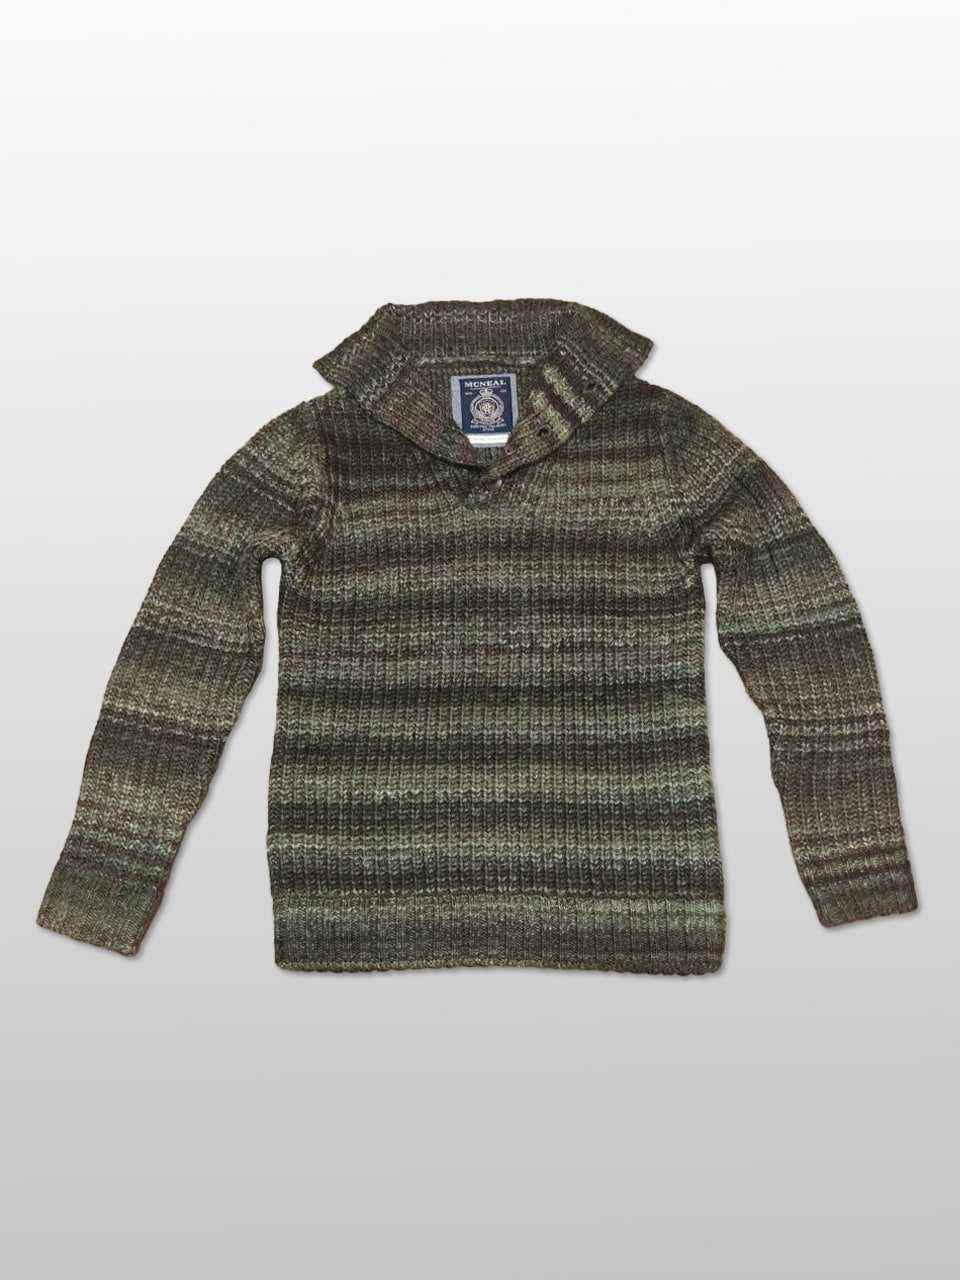 Мужской свитер из козьей шерсти меланжевый. McNeal (Германия)